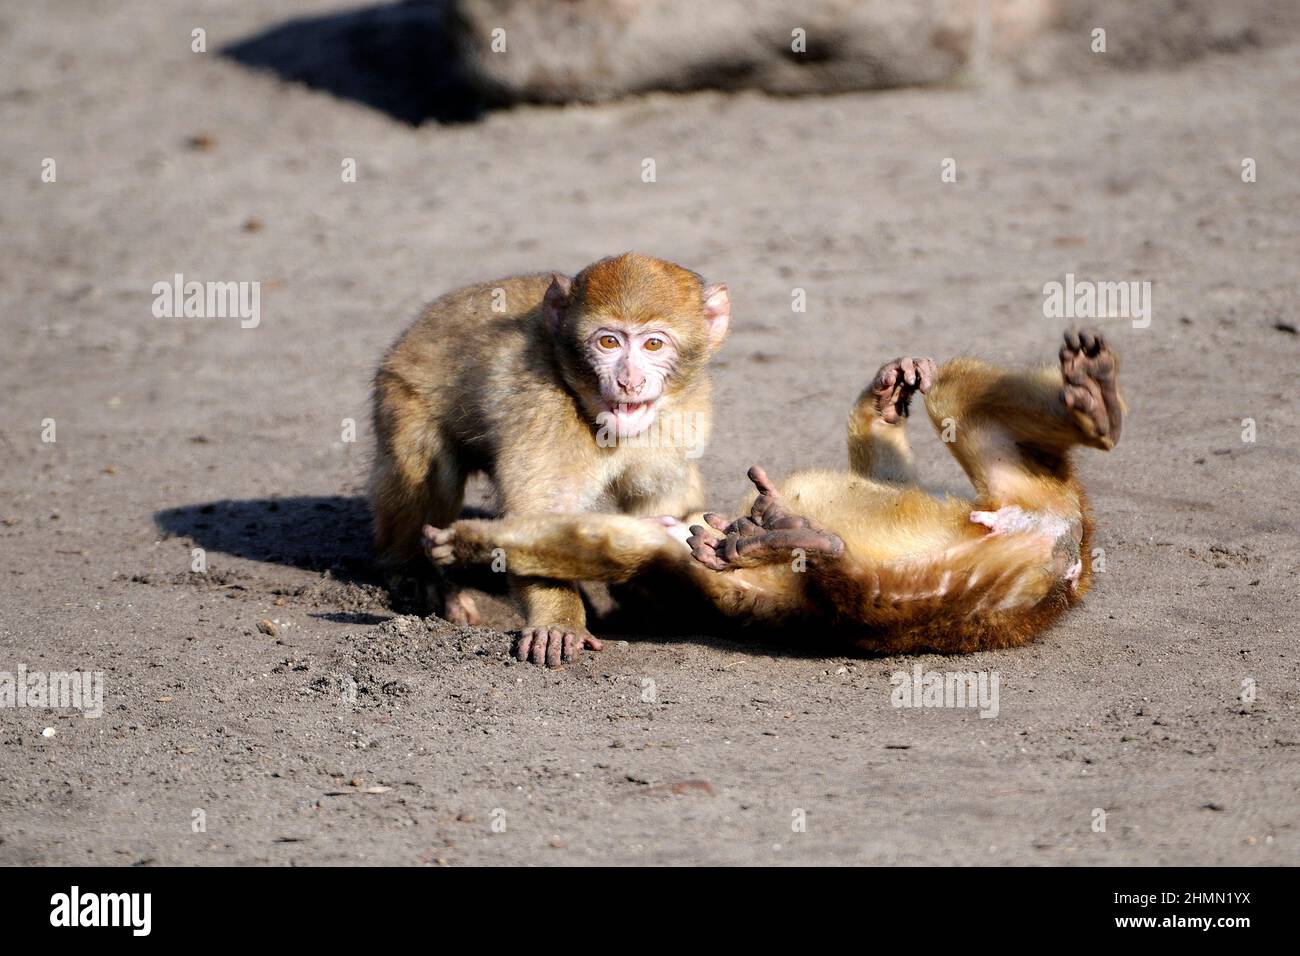 Piccole scimmie immagini e fotografie stock ad alta risoluzione - Alamy